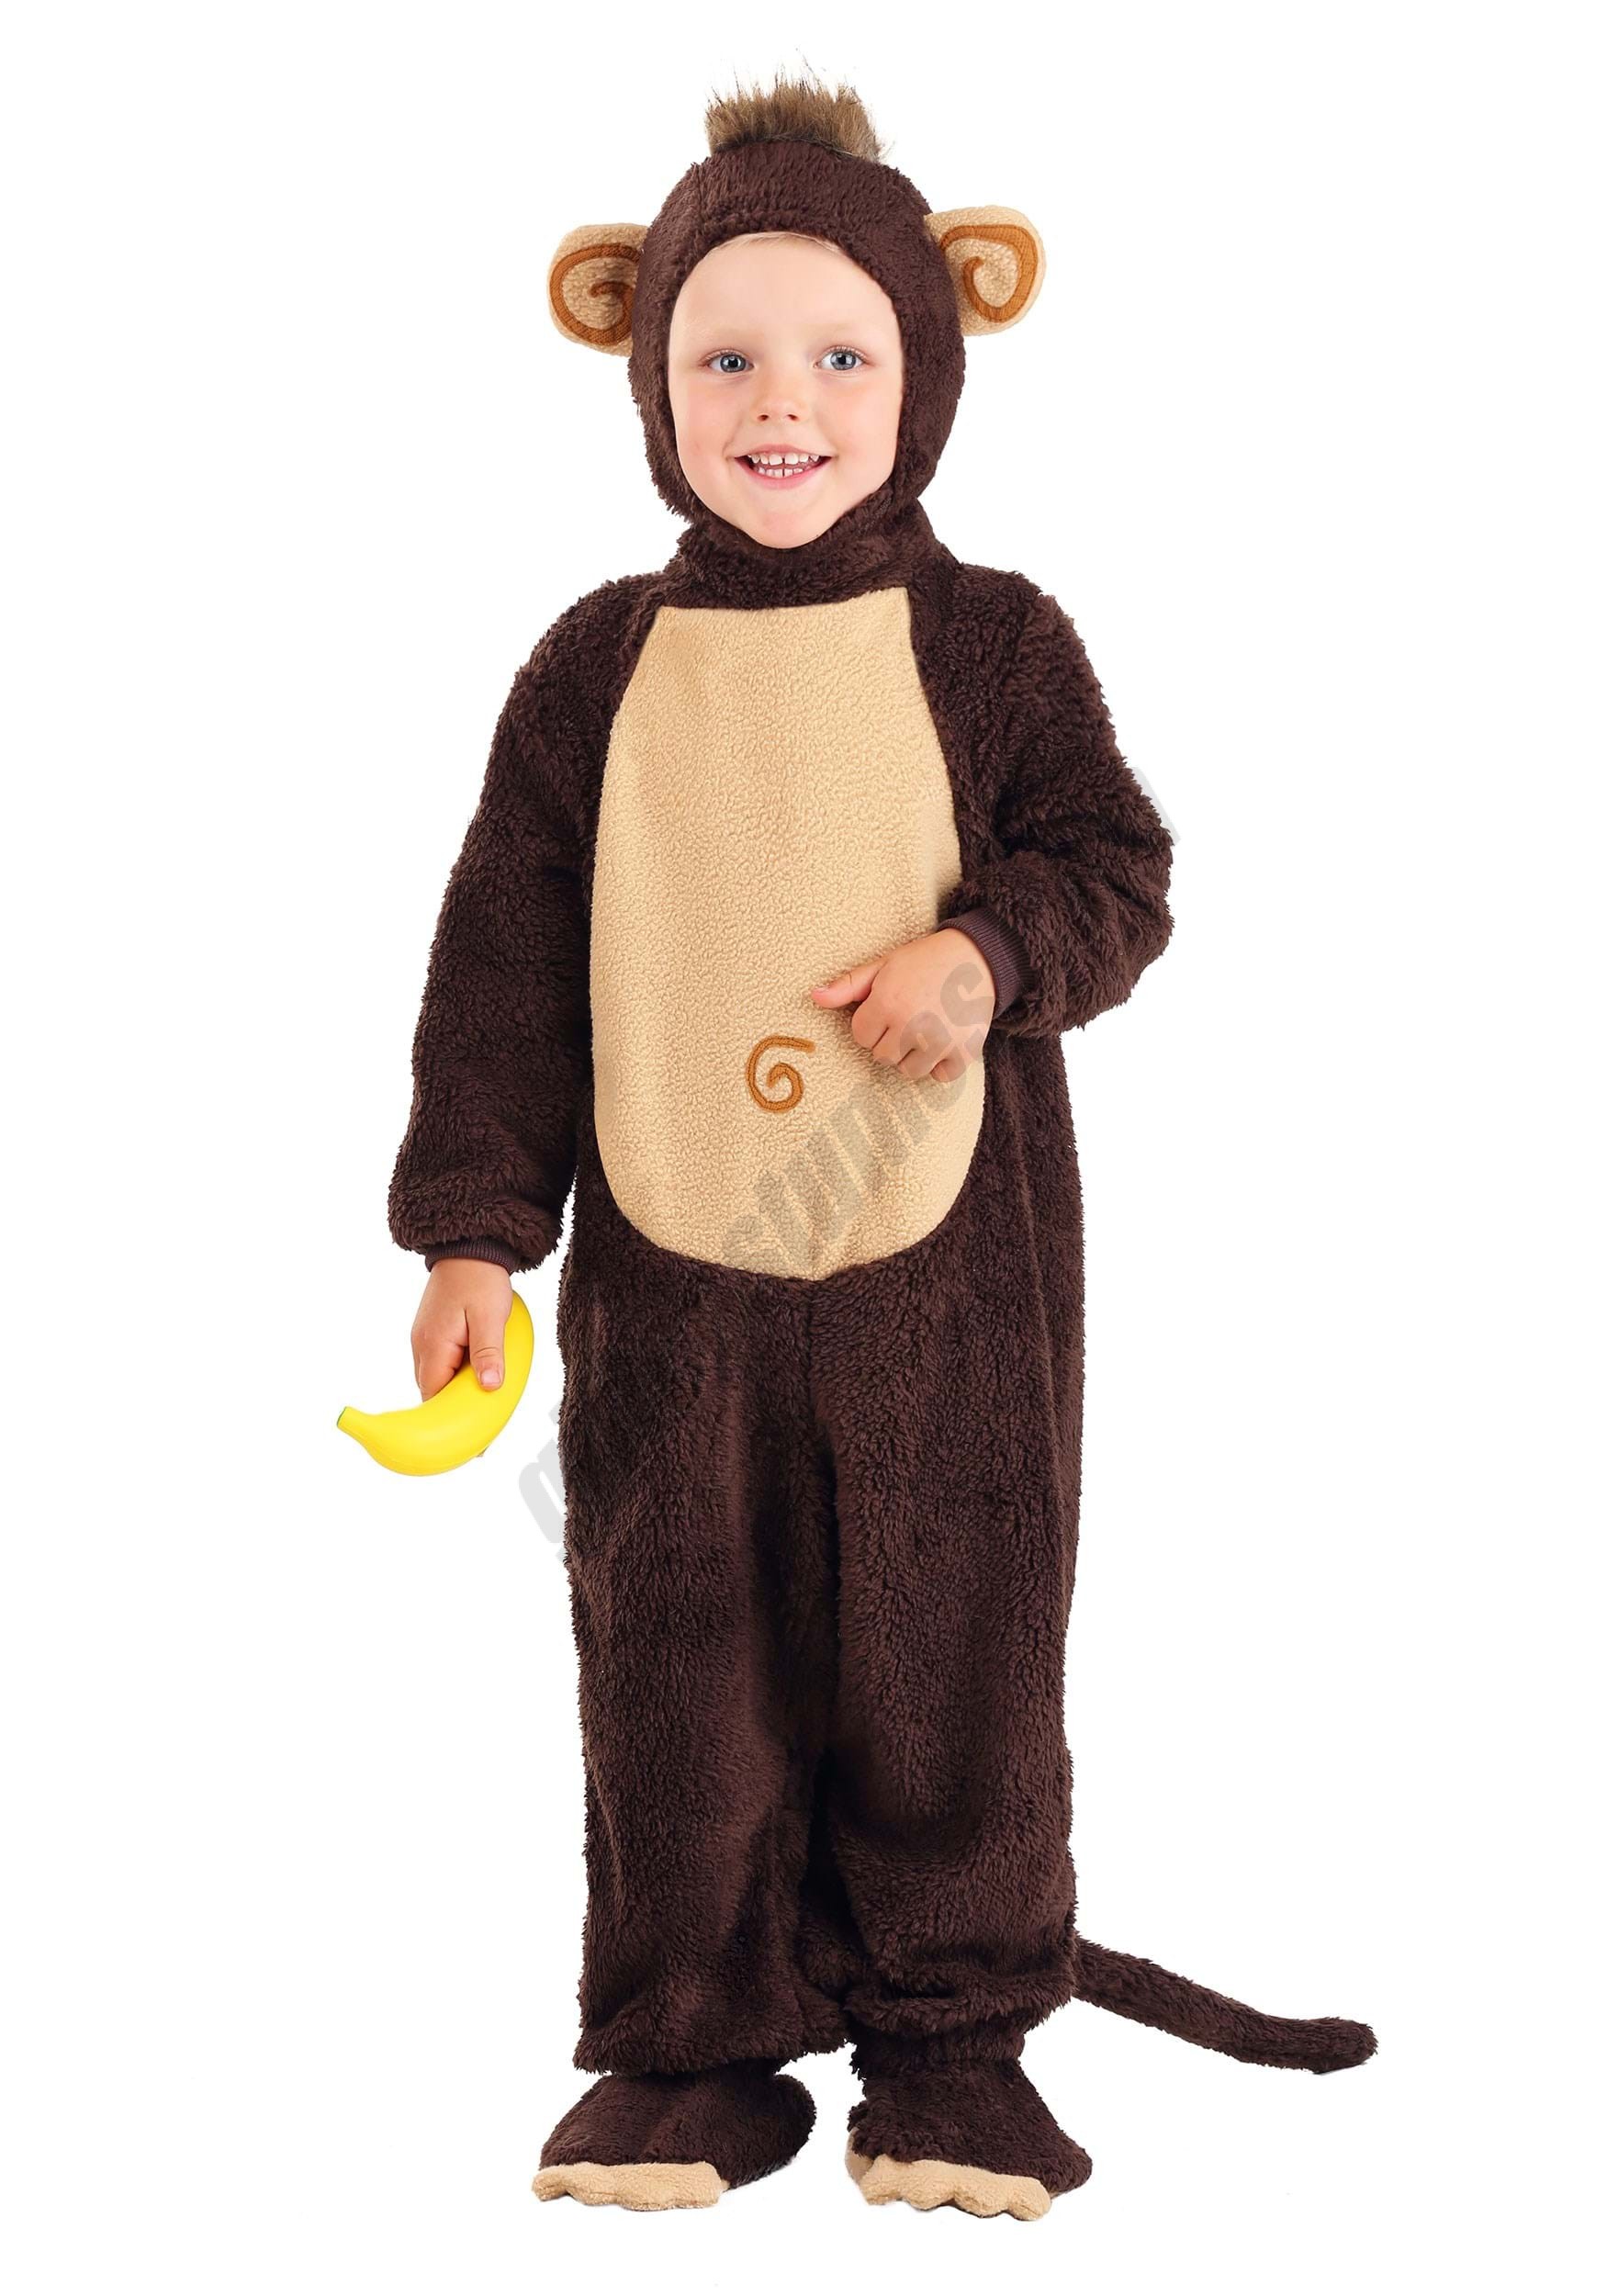 Infant Monkey Costume Promotions - Infant Monkey Costume Promotions